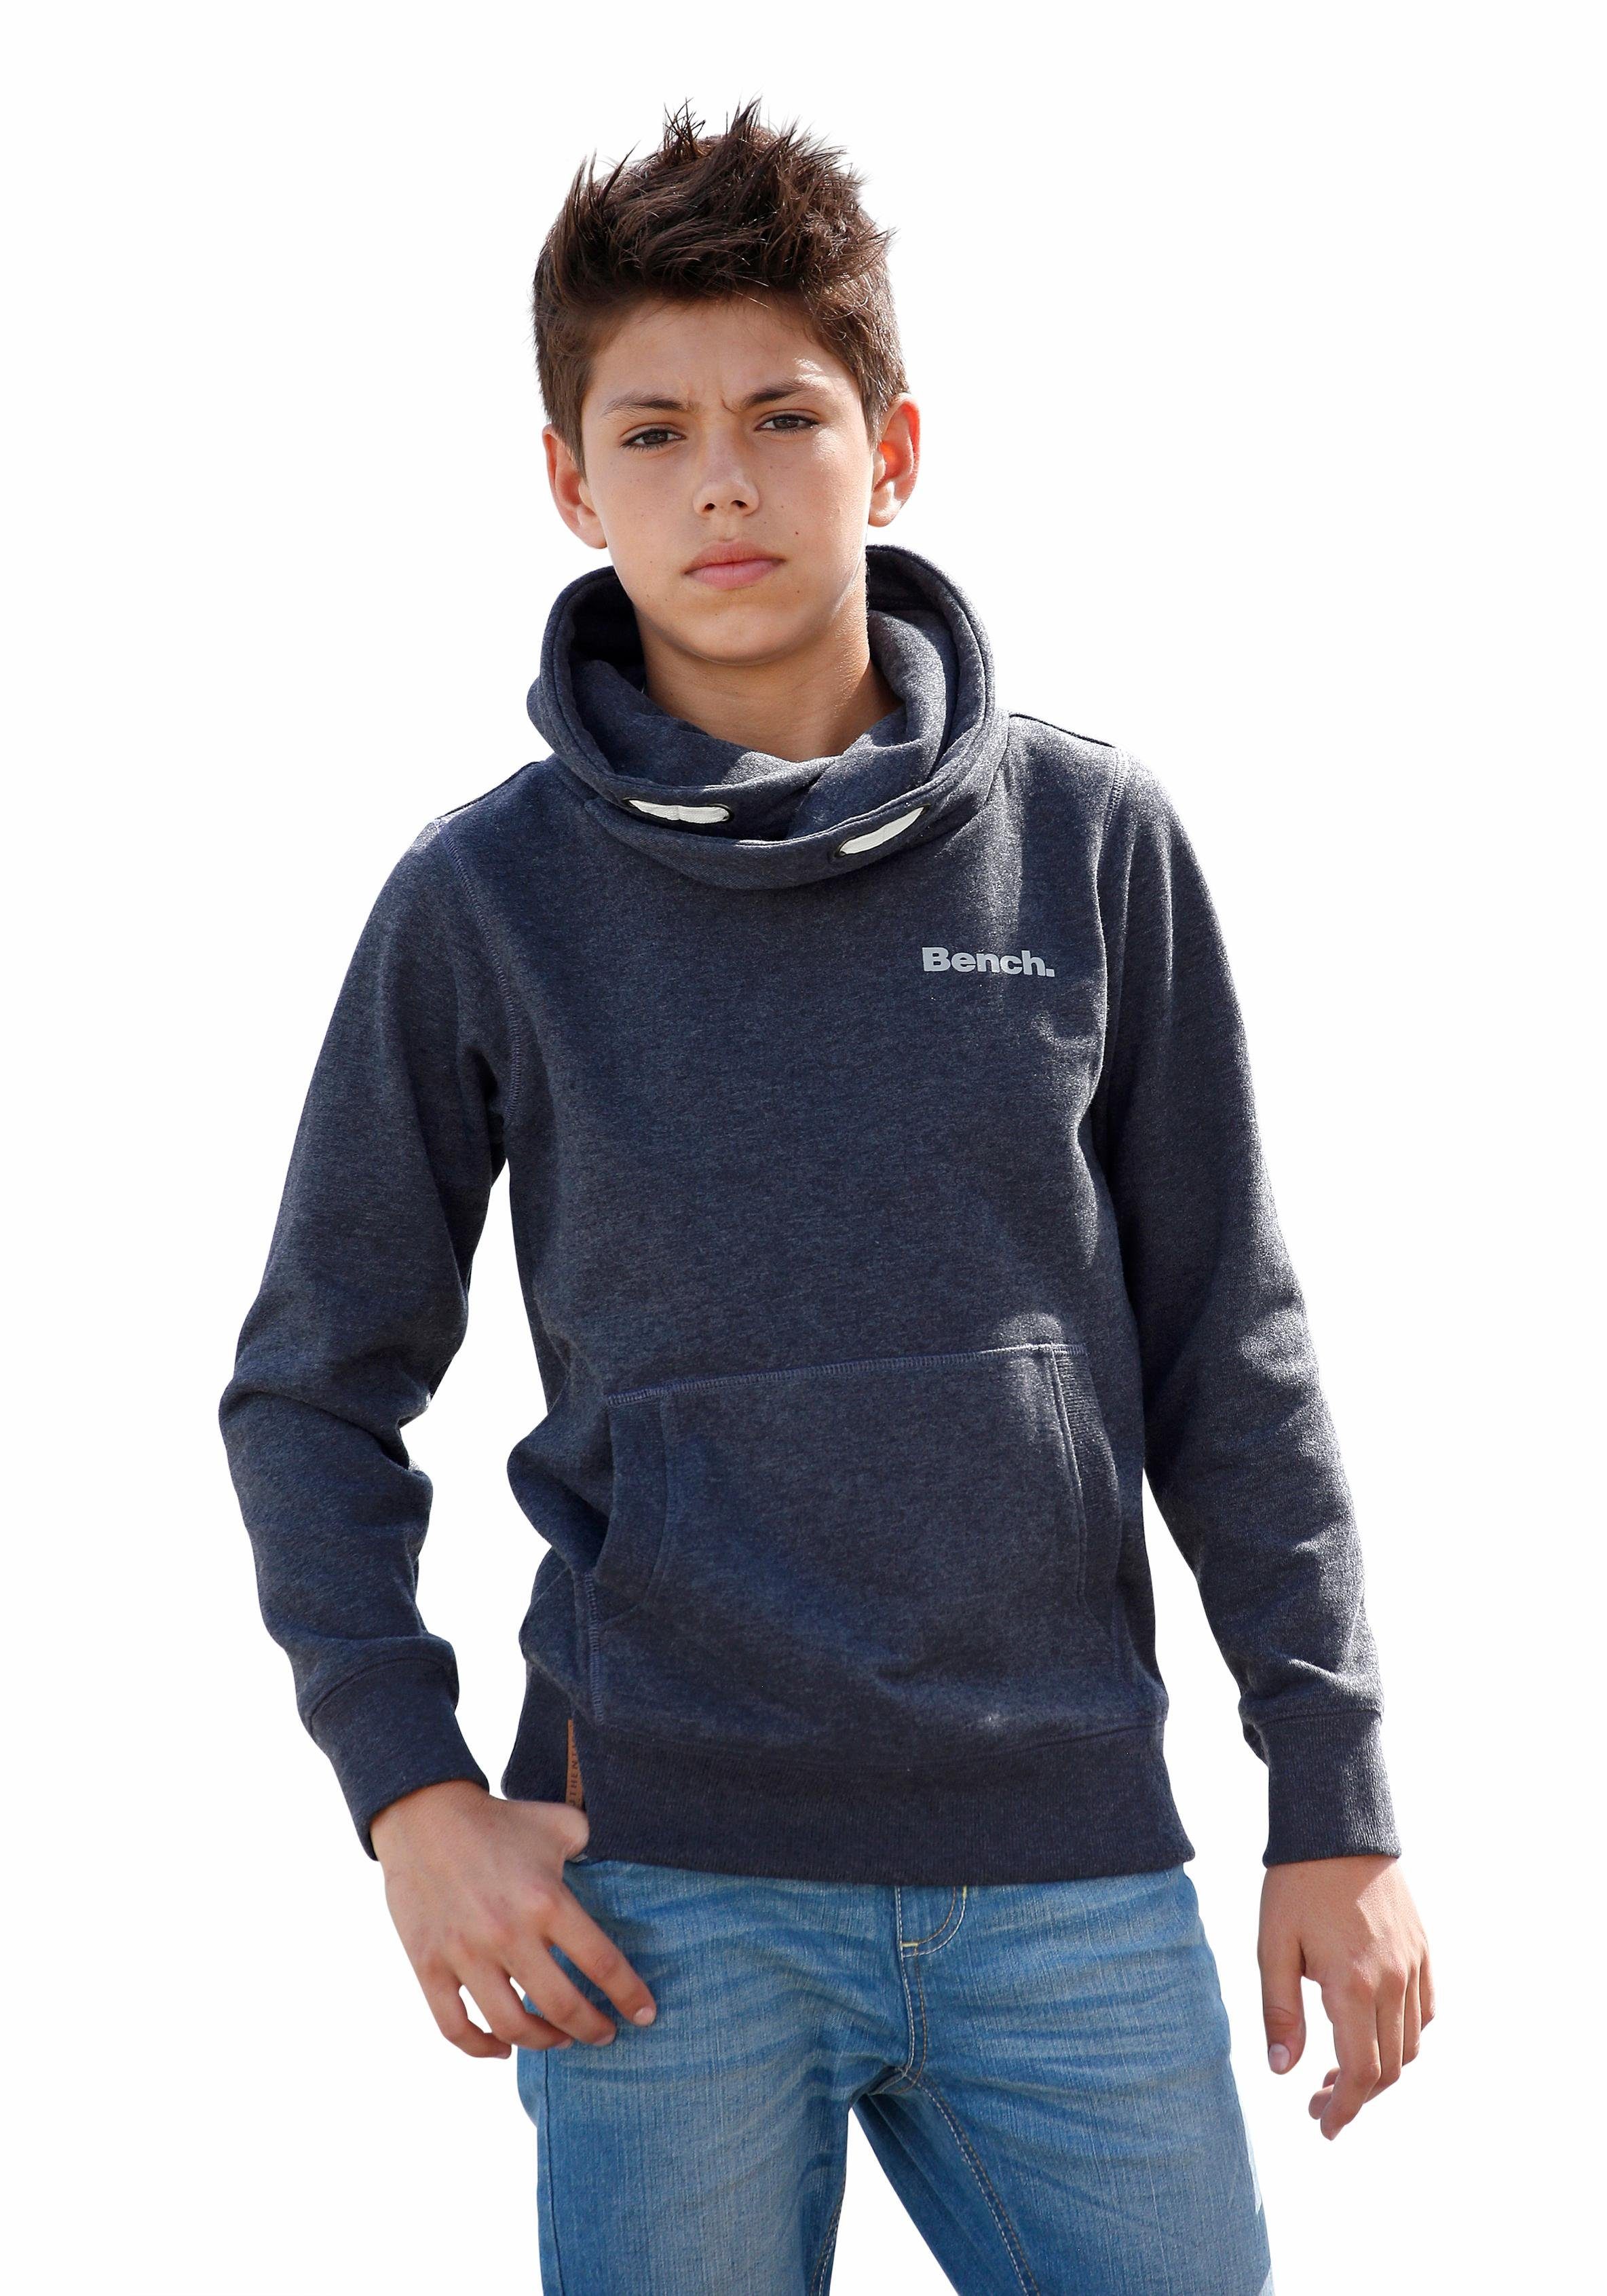 Jungen Sweatshirts & Sweatjacken online kaufen | OTTO